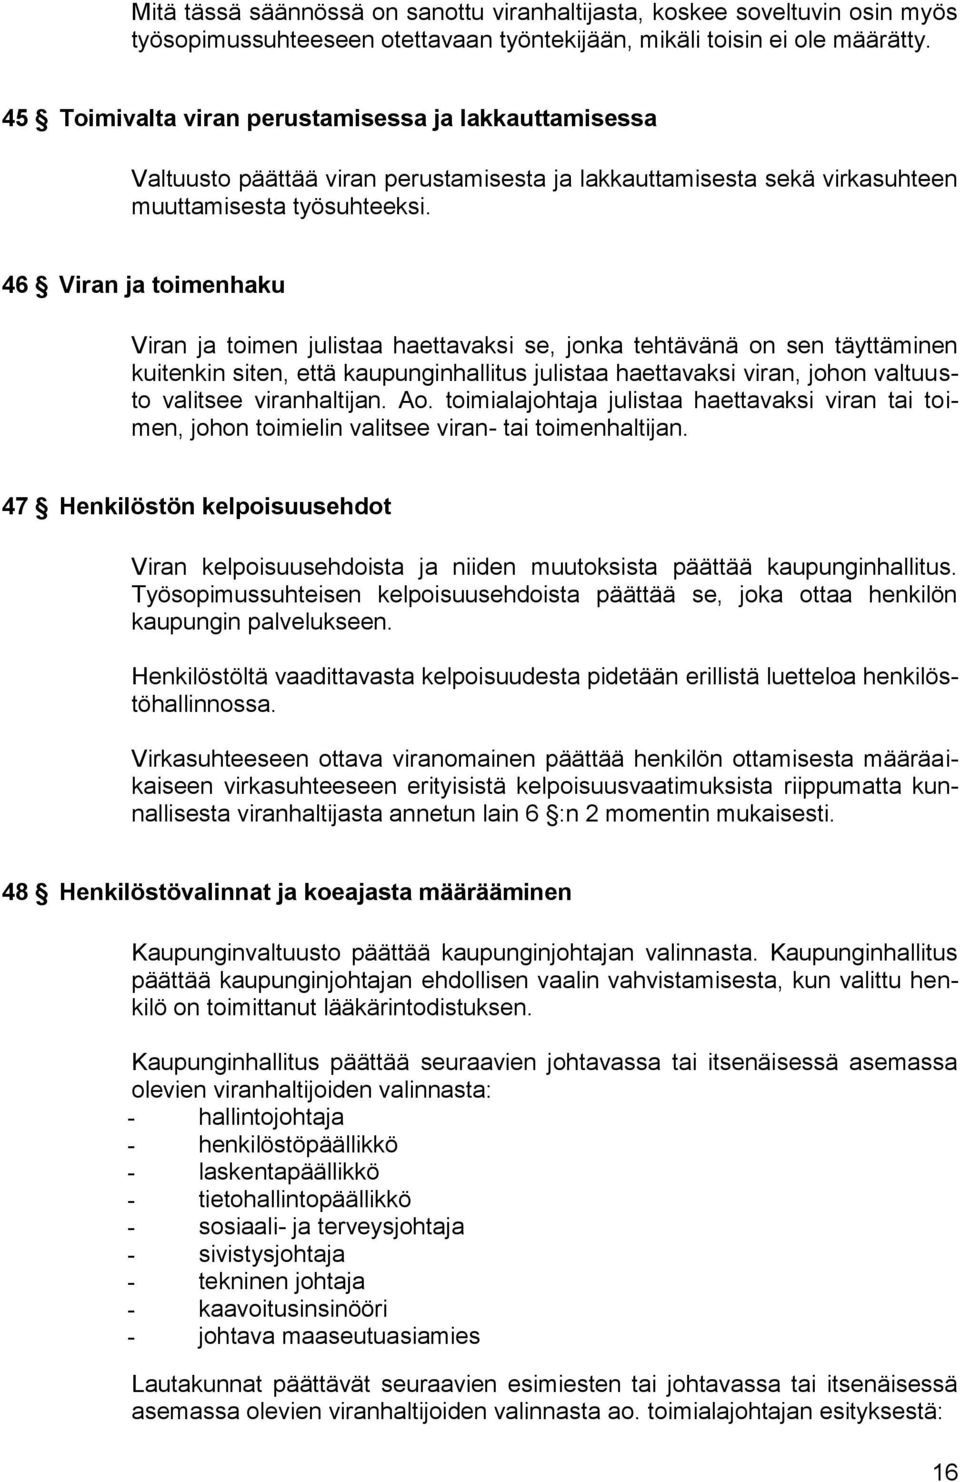 46 Viran ja toimenhaku Viran ja toimen julistaa haettavaksi se, jonka tehtävänä on sen täyttäminen kuitenkin siten, että kaupunginhallitus julistaa haettavaksi viran, johon valtuusto valitsee